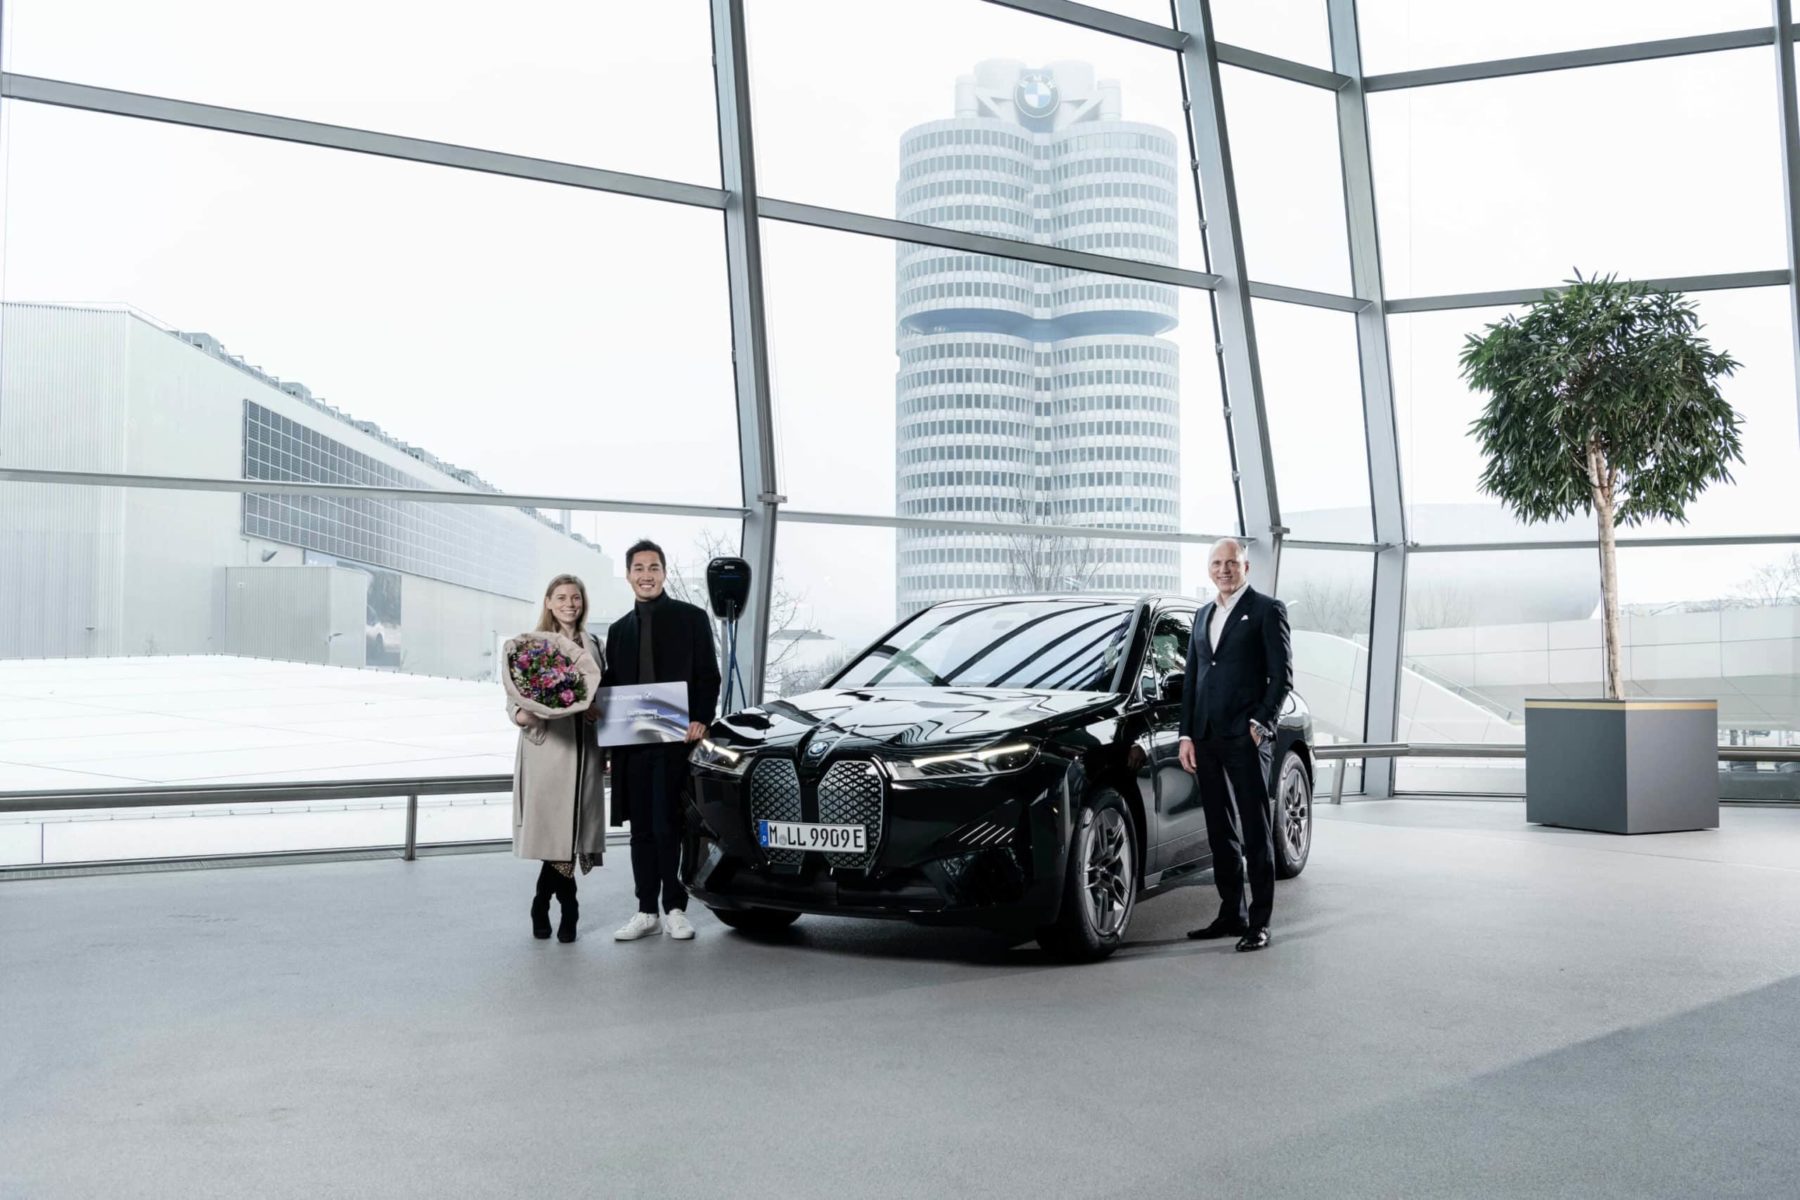 Übergabe des einmillionsten elektrifizierten Fahrzeugs der BMW Group am 06.12.2021 in der BMW Welt in München. V.l.n.r.: Lisa Weindl, Linh Doan und Pieter Nota, Mitglied des Vorstands der BMW AG, Kunde, Marken, Vertrieb, mit dem BMW iX xDrive40